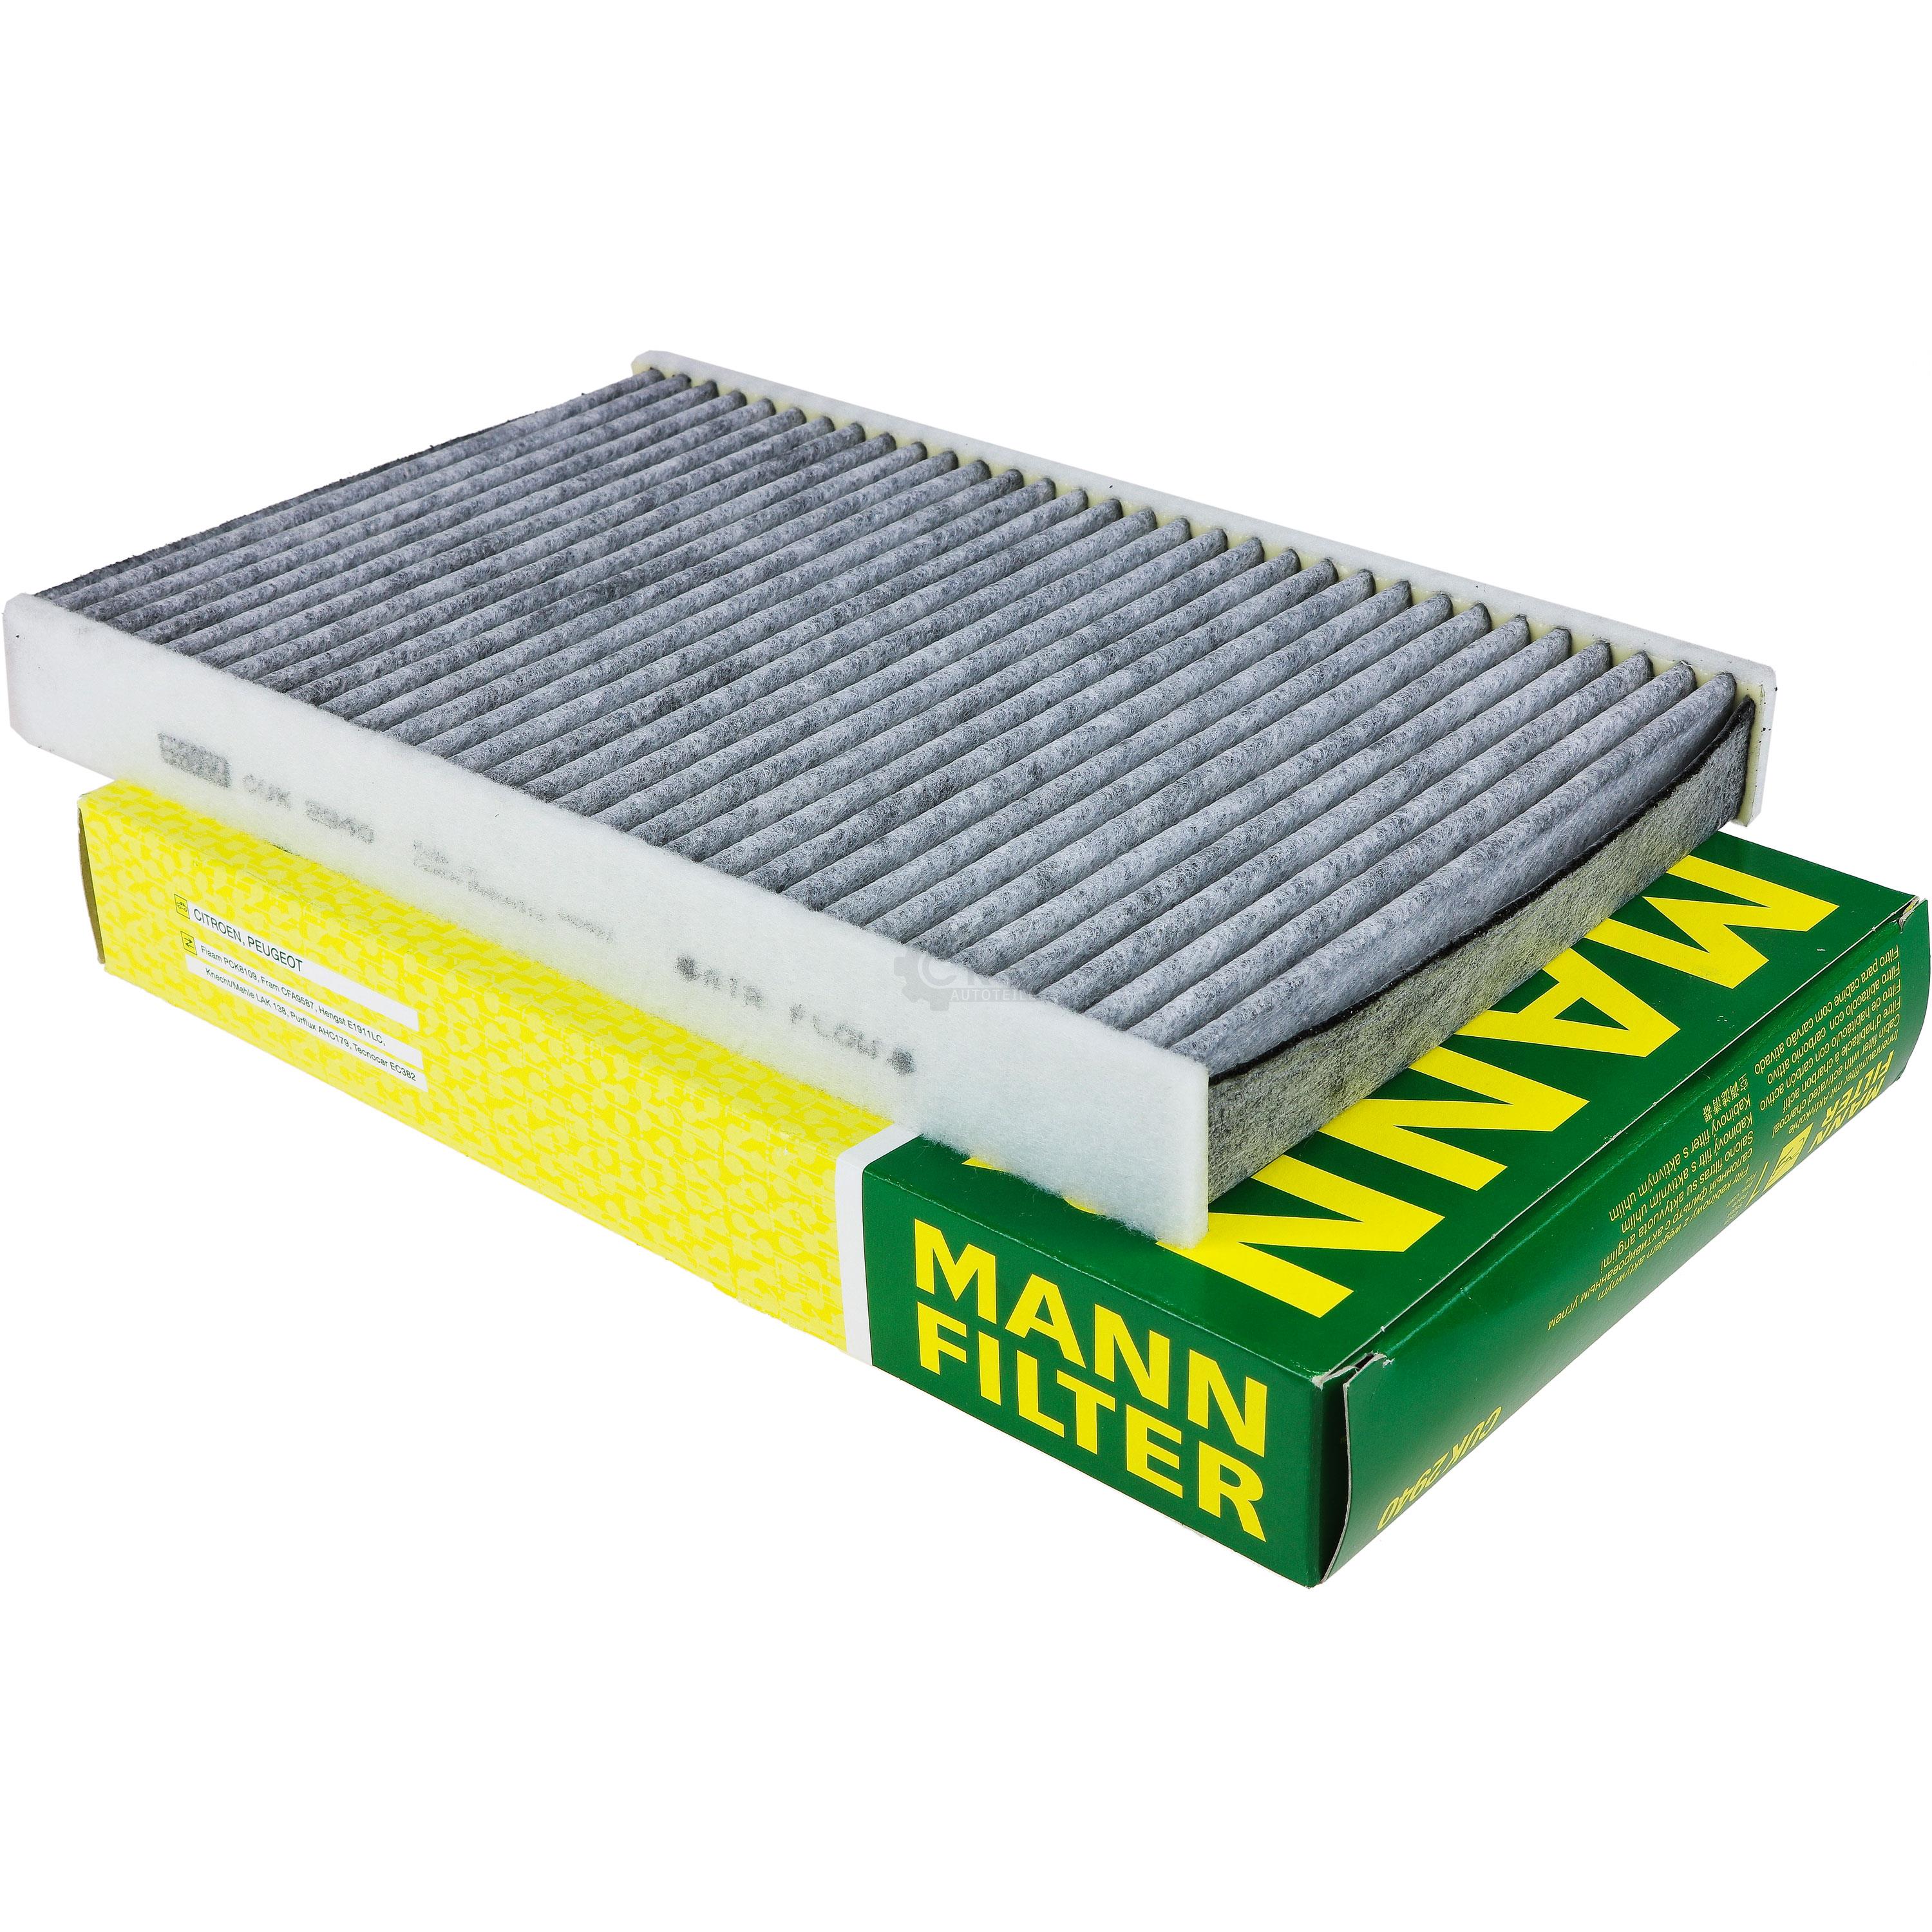 MANN-FILTER Innenraumfilter Pollenfilter Aktivkohle CUK 2940